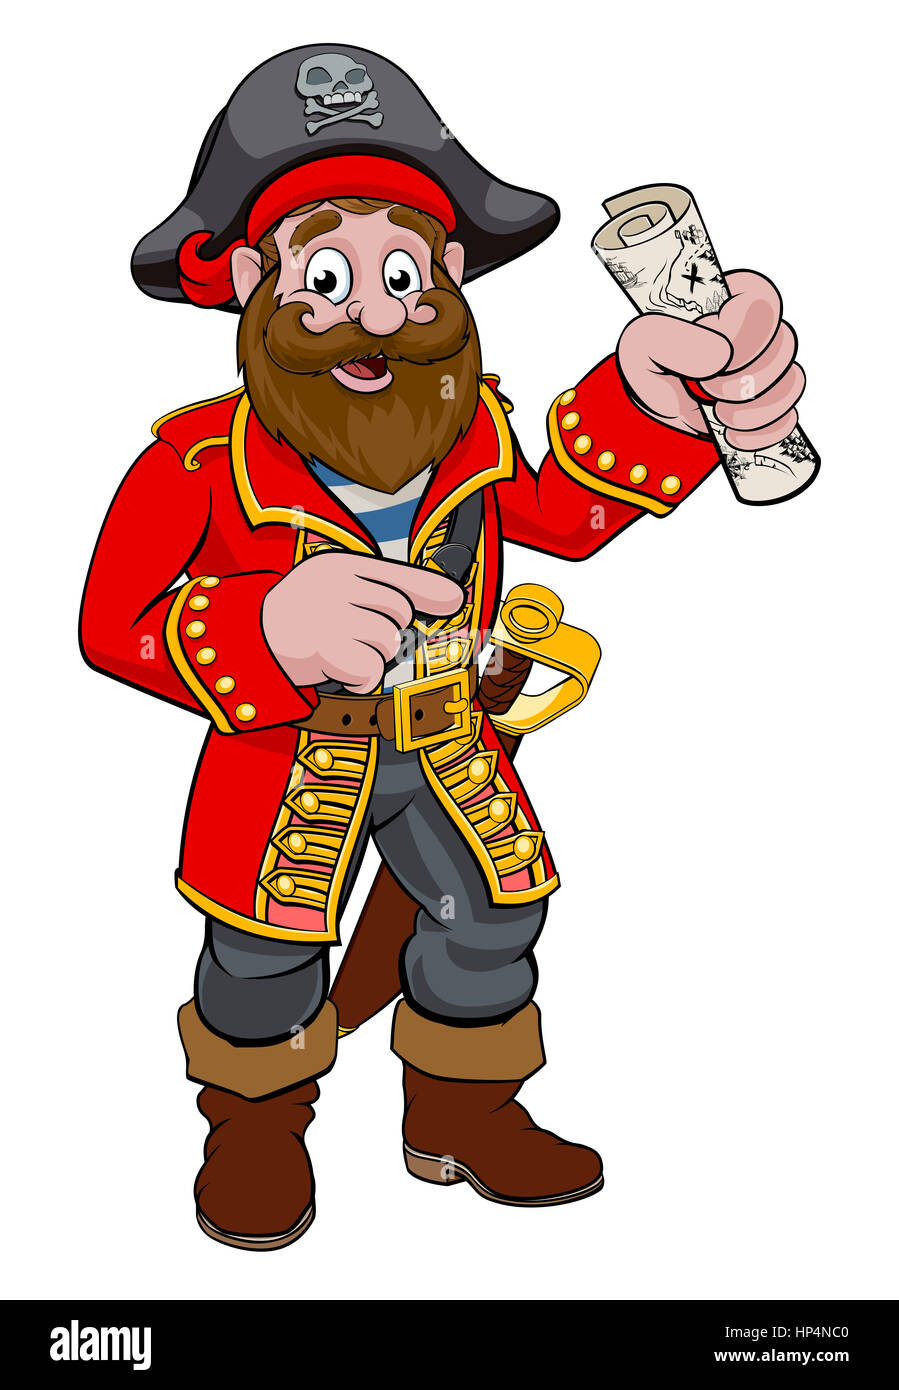 Une illustration d'une caricature sympathique de pointage pirate tenant une carte de trésor Banque D'Images